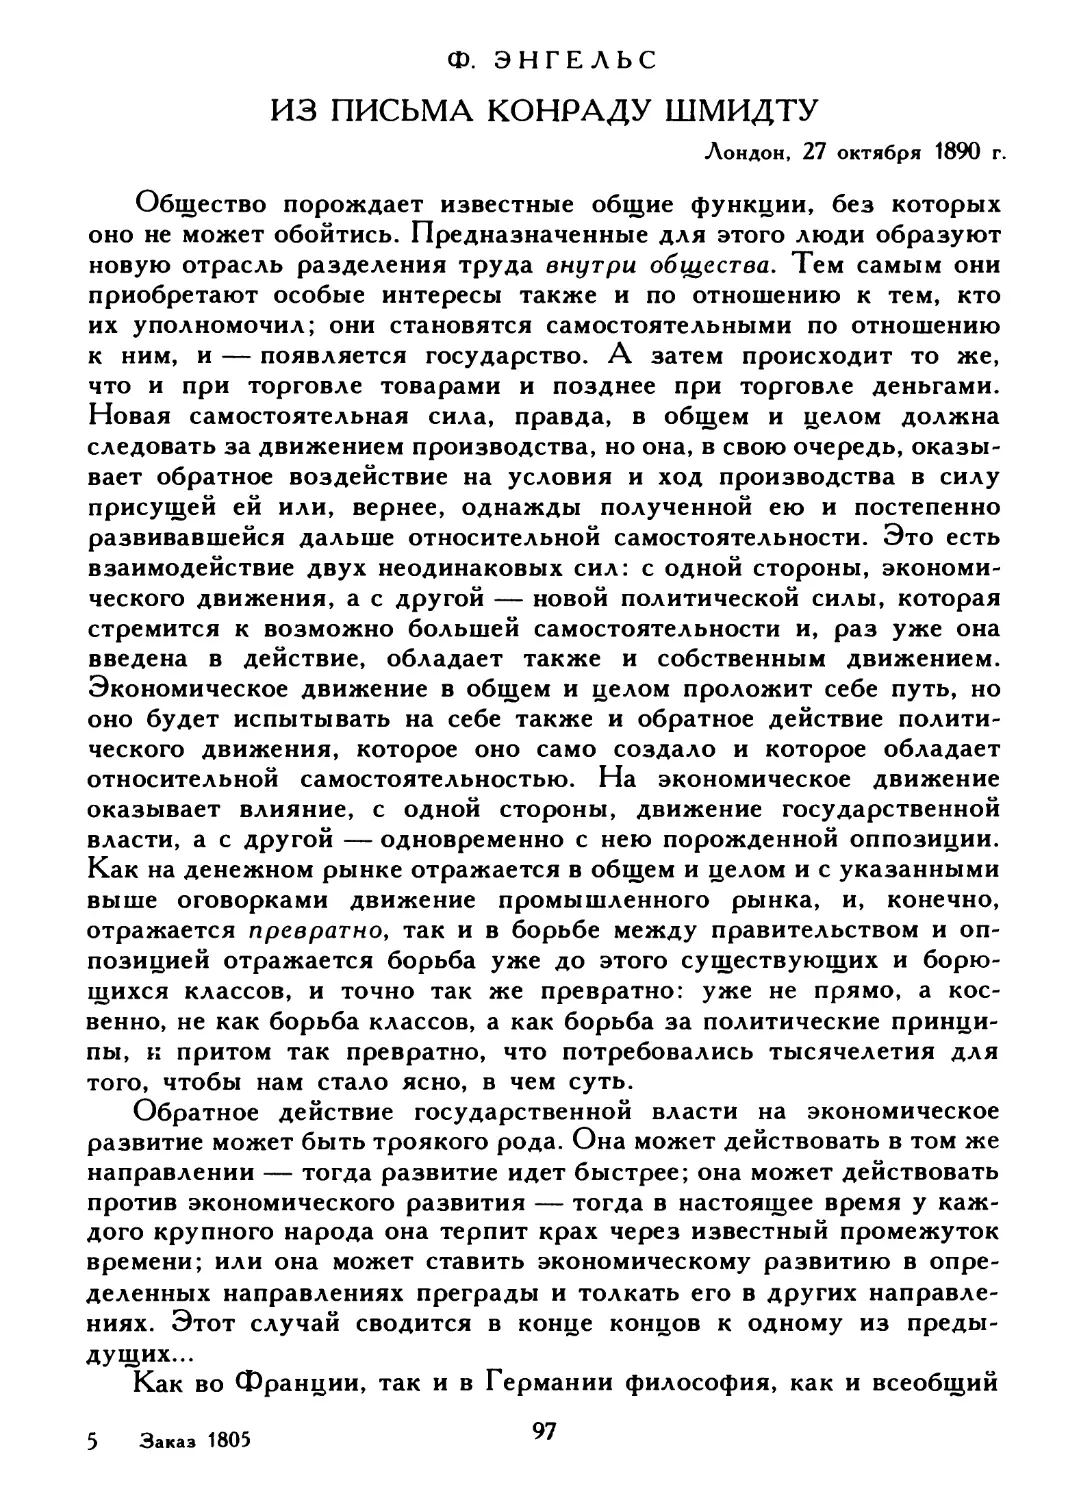 Ф. Энгельс. Из письма Конраду Шмидту, 27 октября 1890 г.